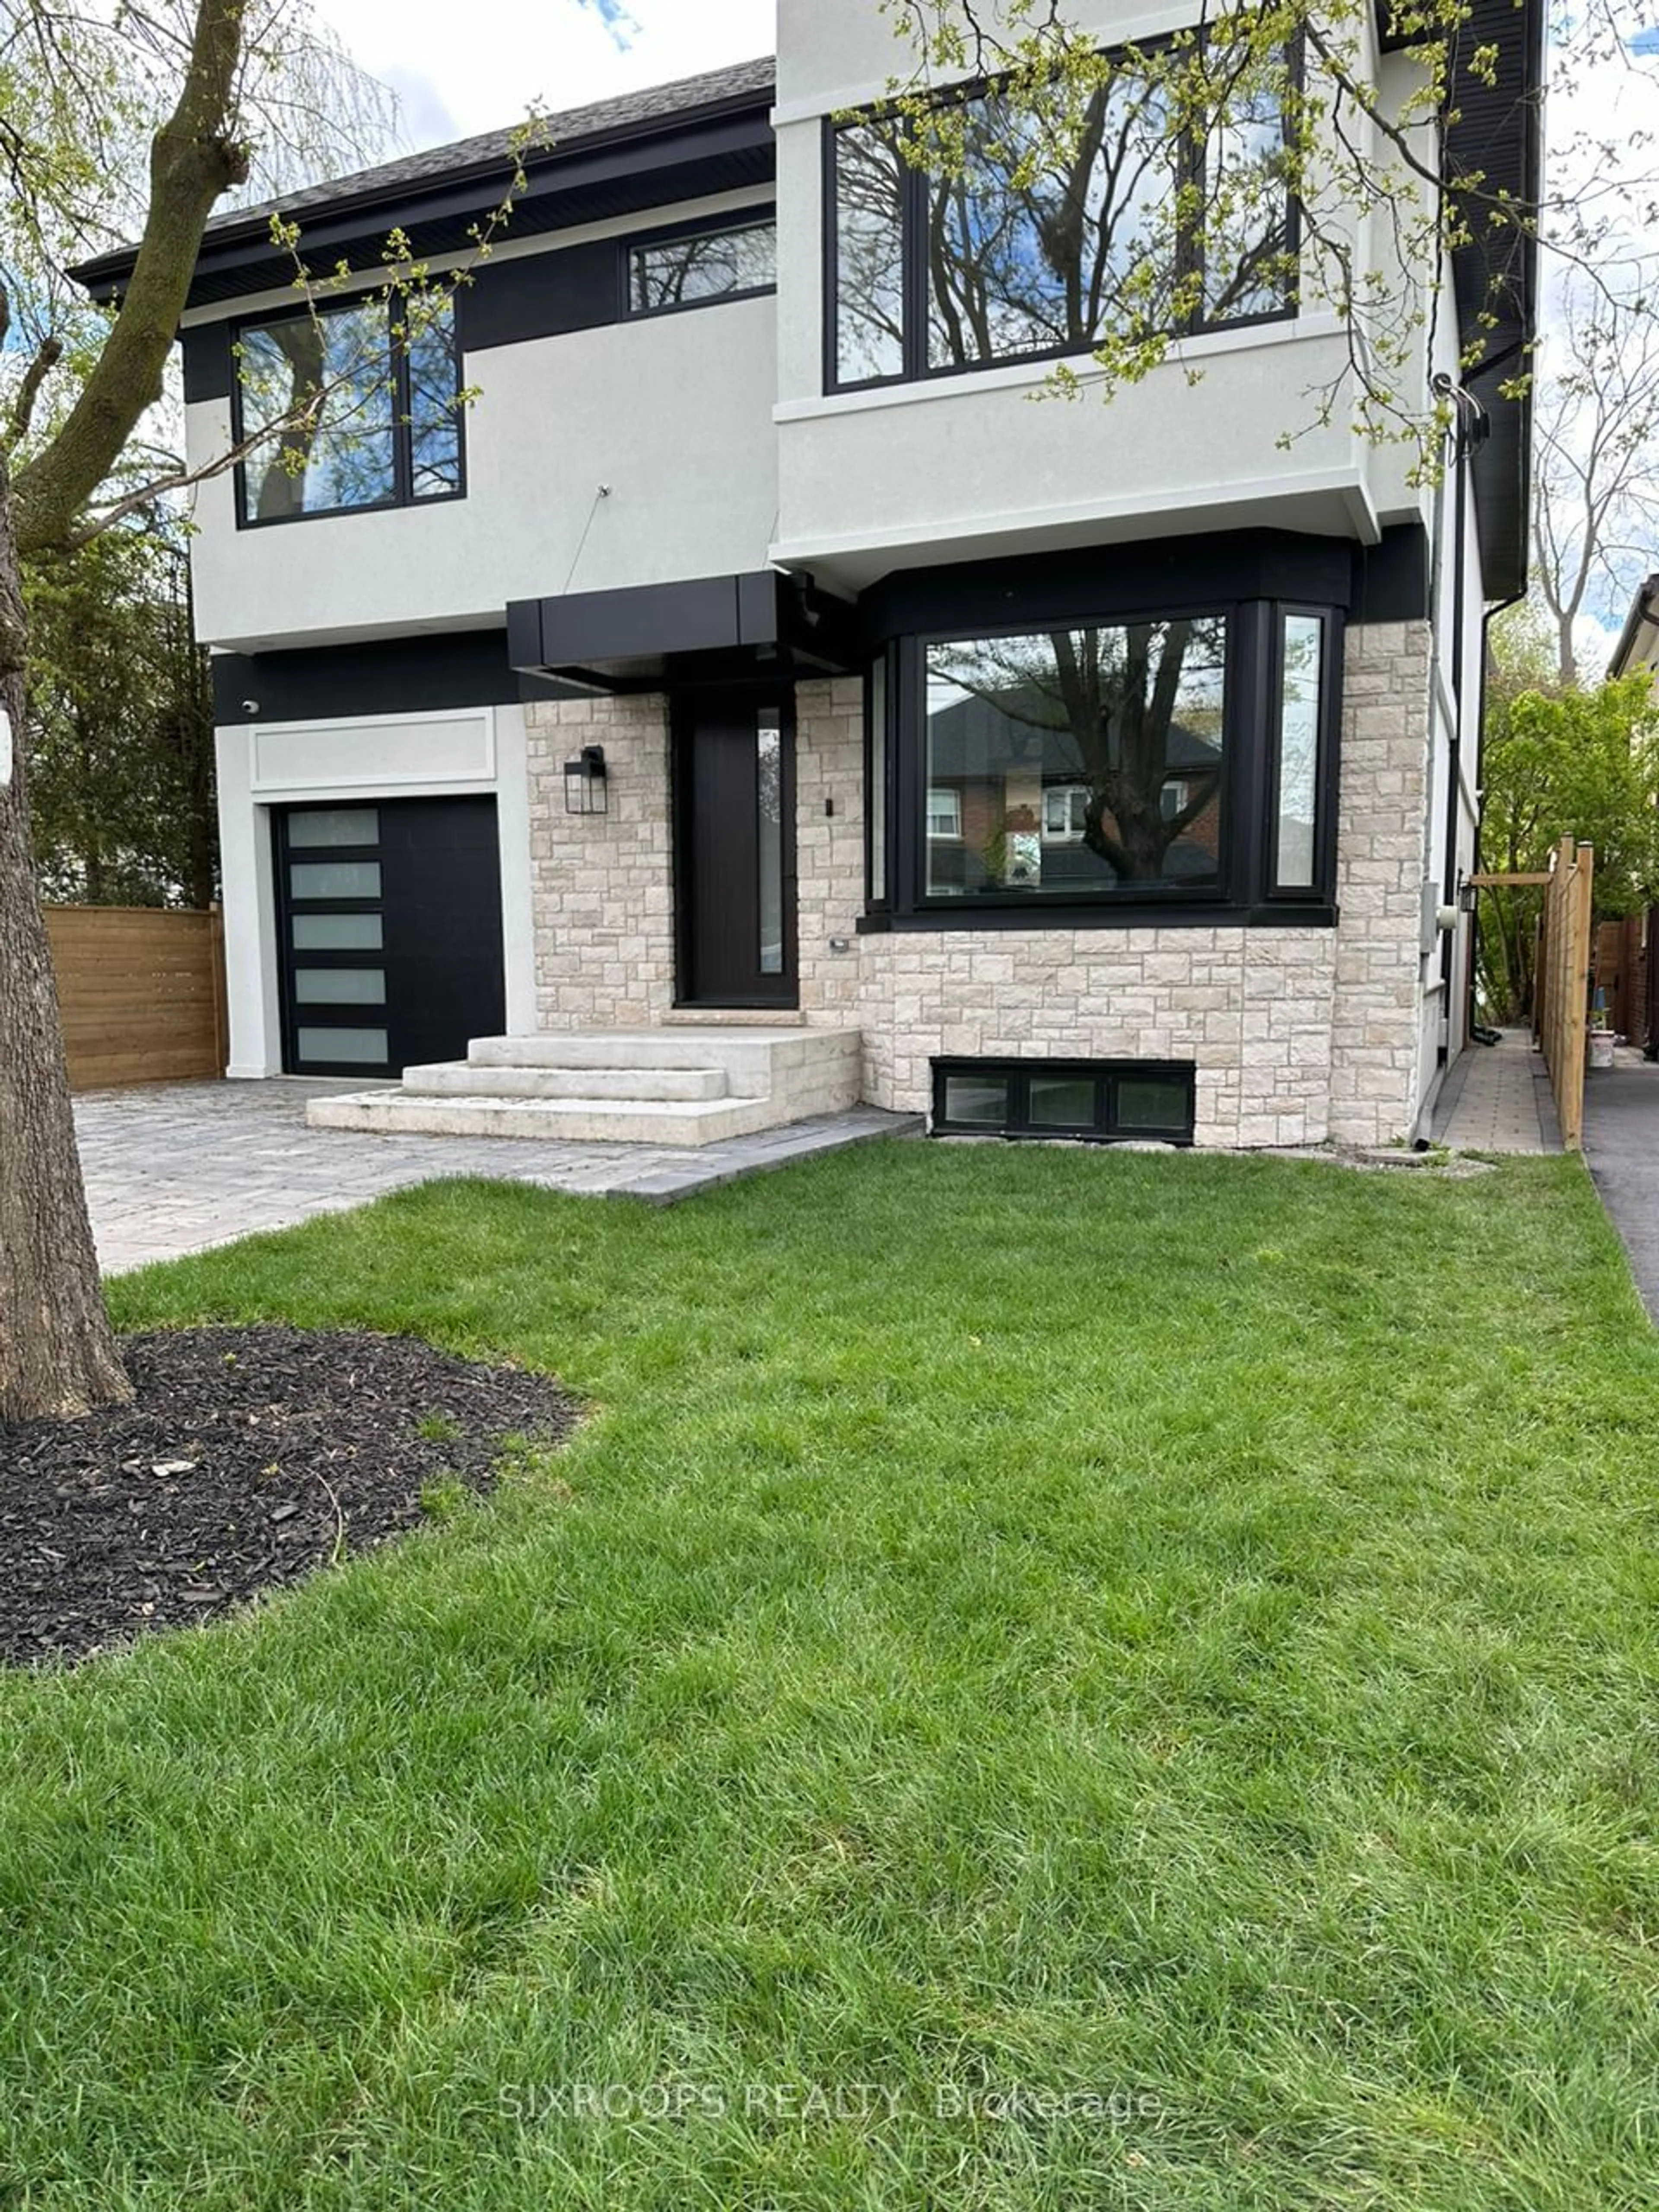 Home with brick exterior material for 35 Emerald Cres, Toronto Ontario M8V 2B3